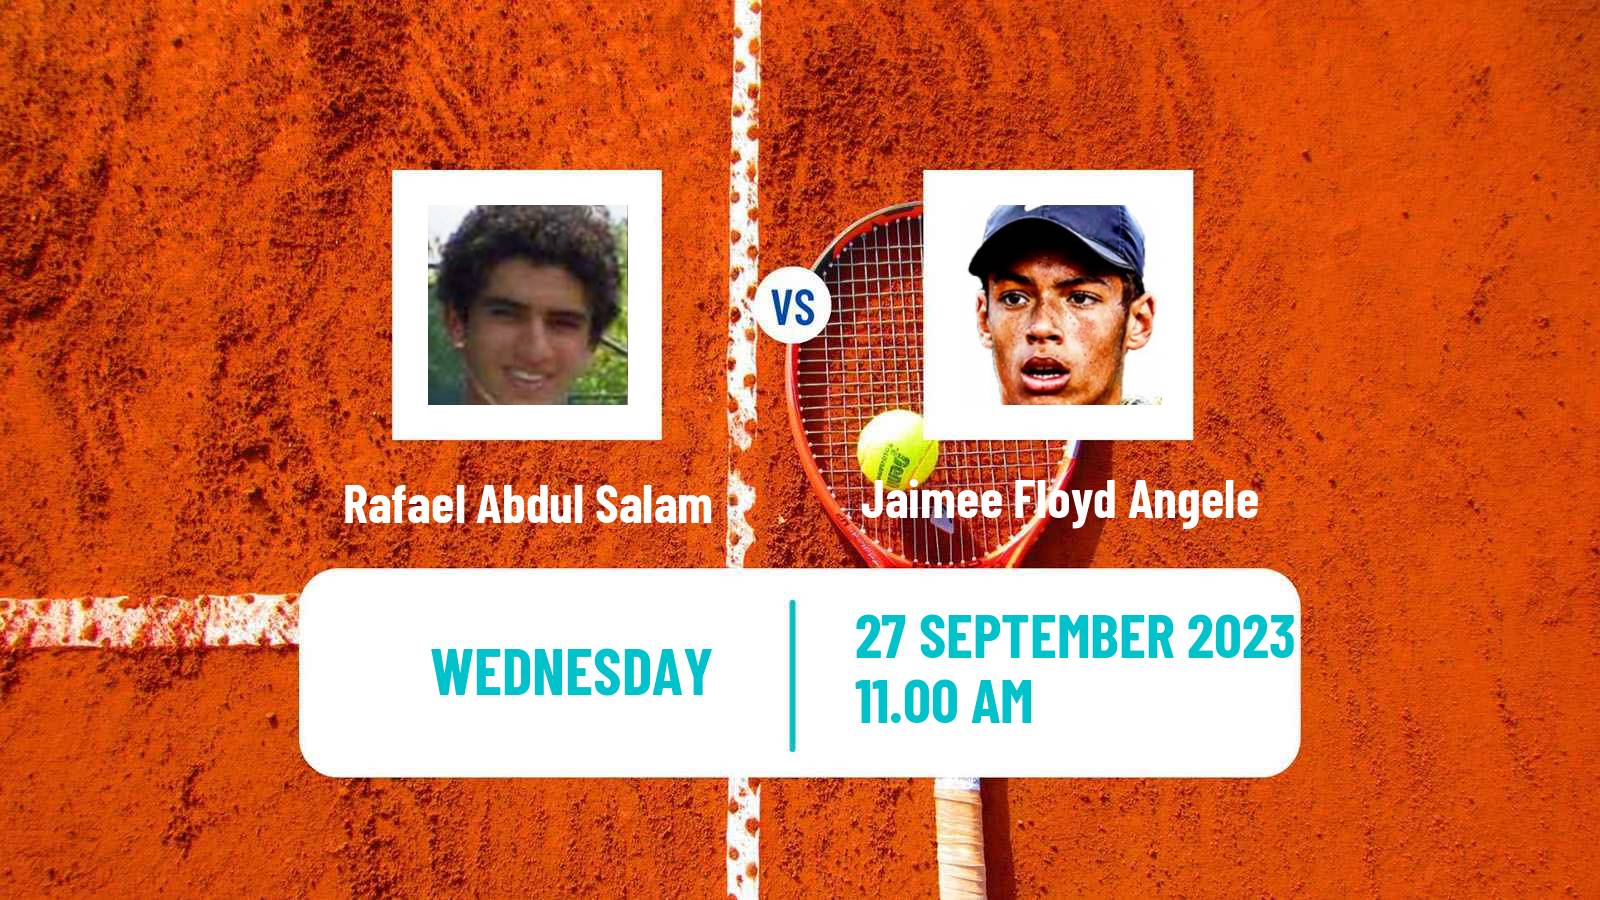 Tennis ITF M15 Albuquerque Nm Men Rafael Abdul Salam - Jaimee Floyd Angele